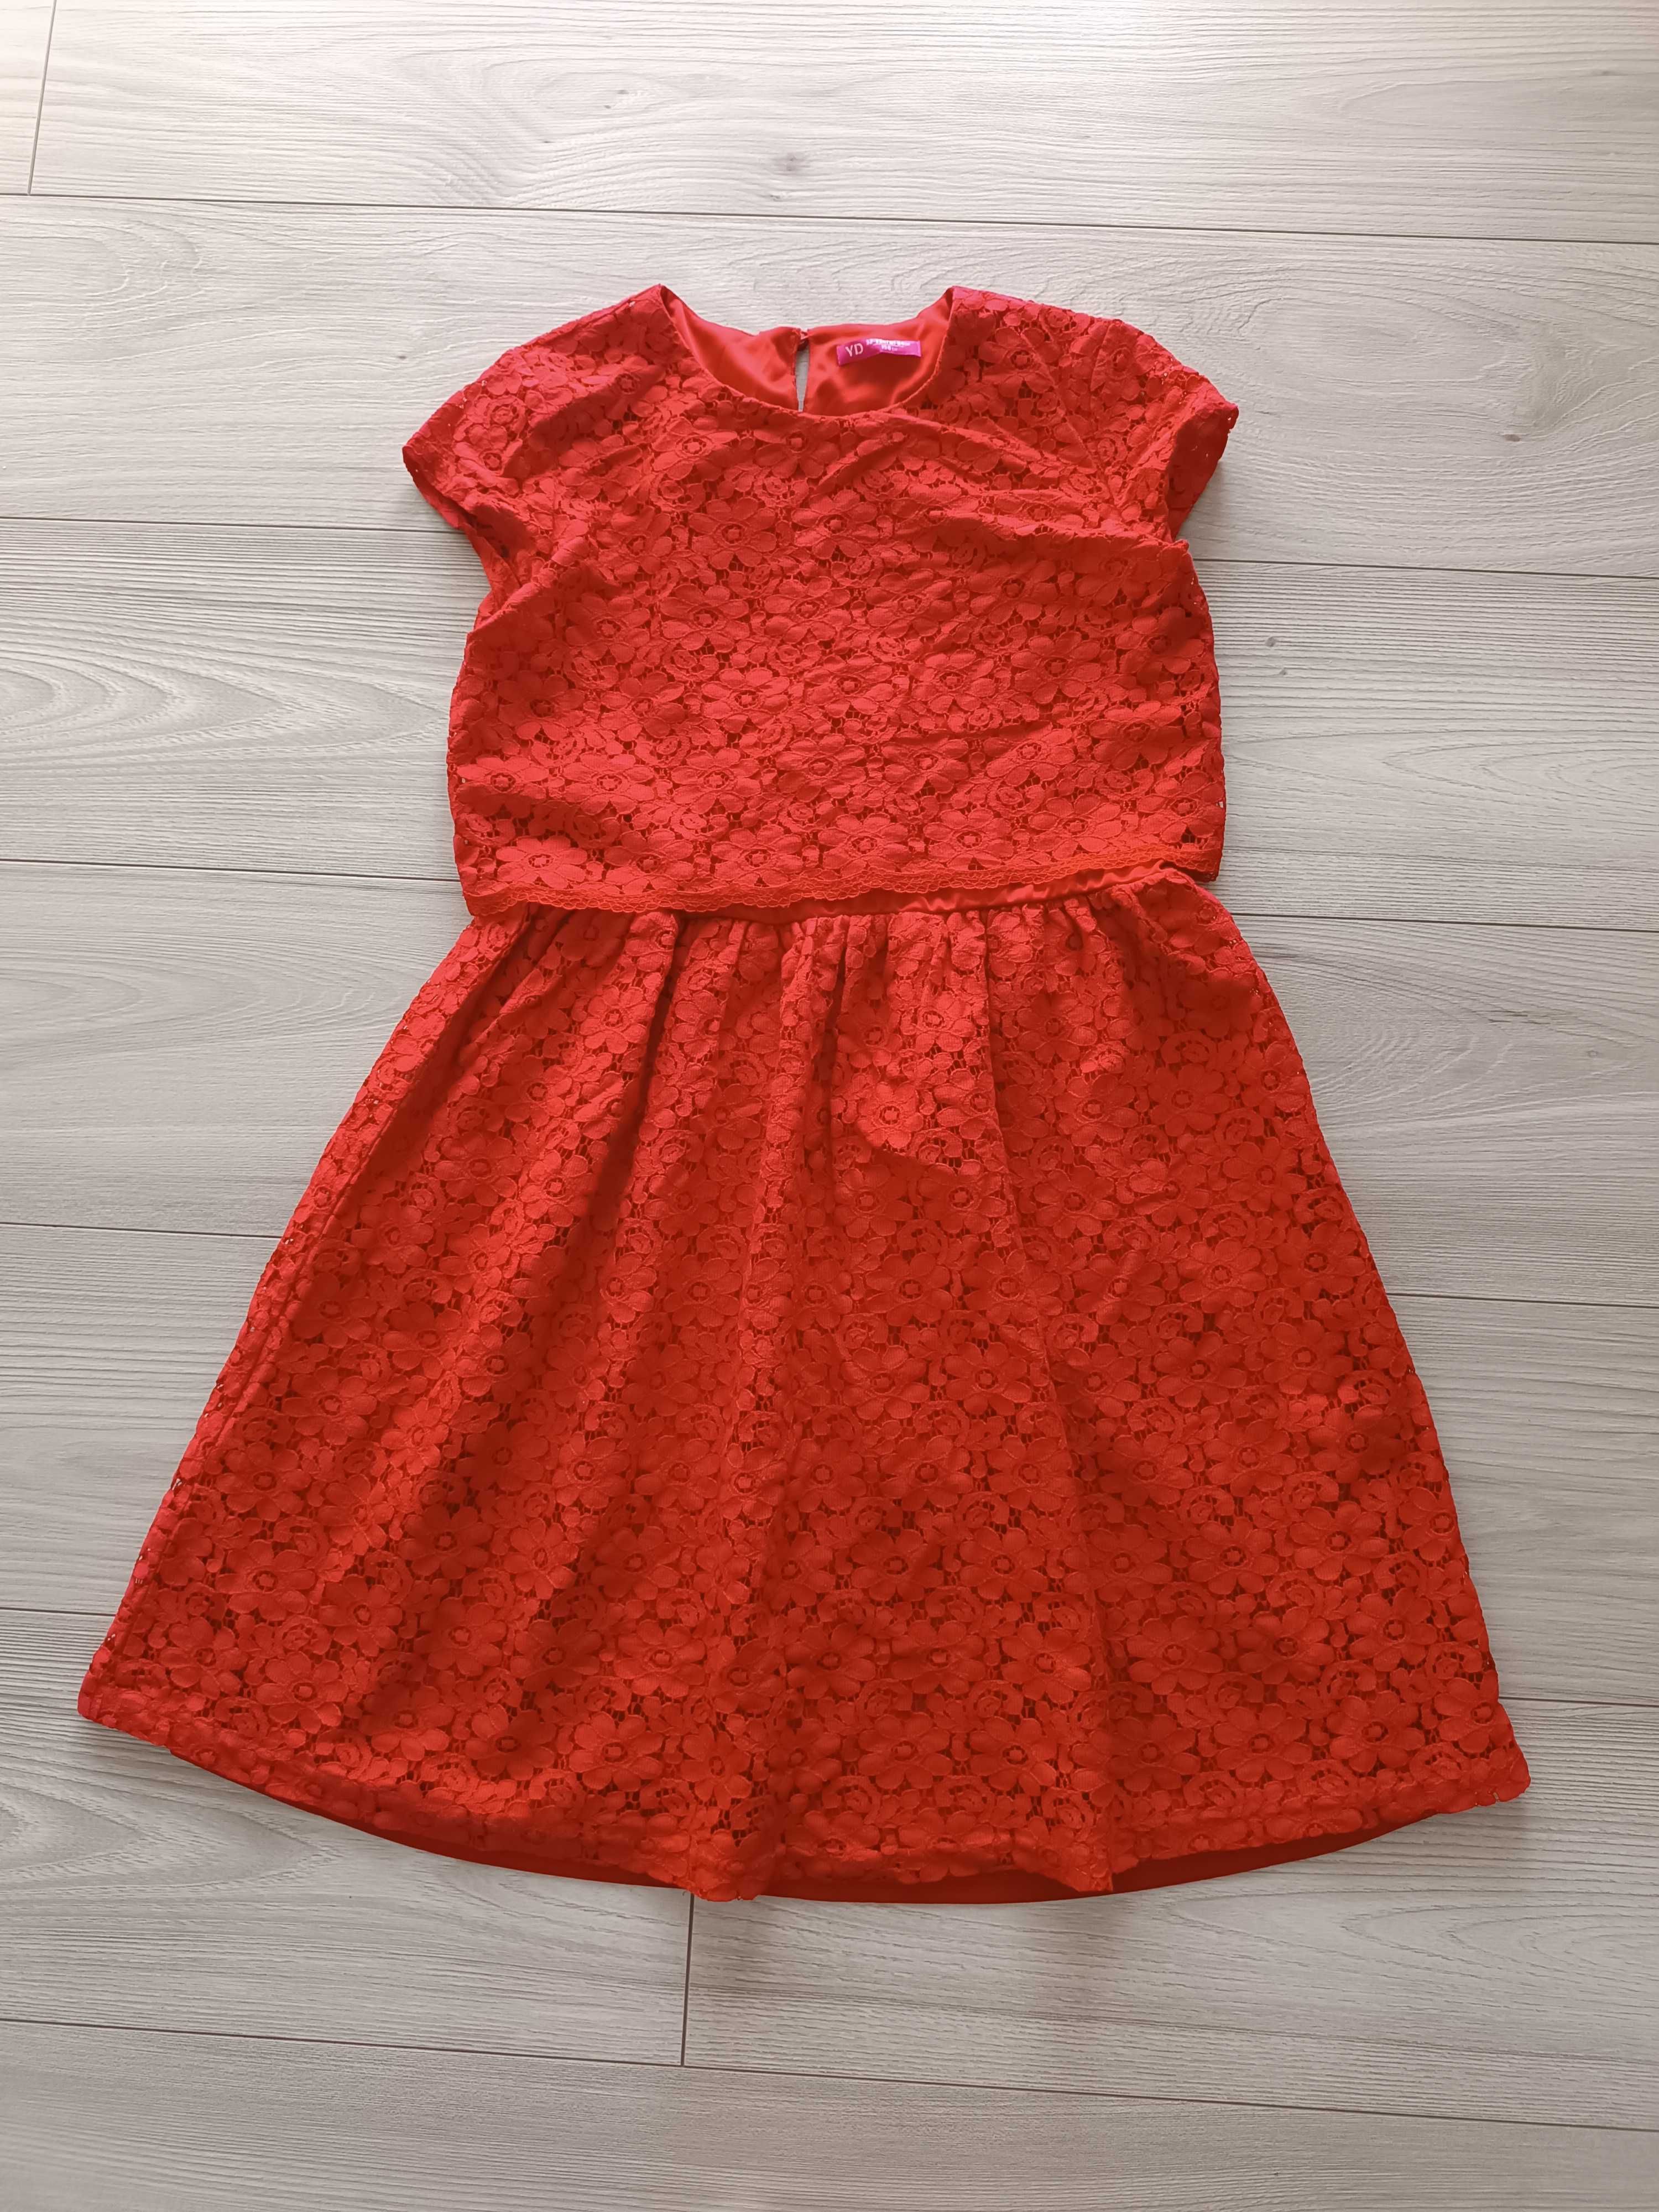 Sukienka dziewczęca koronkowa czerwona krótki rękaw używana, 158 cm